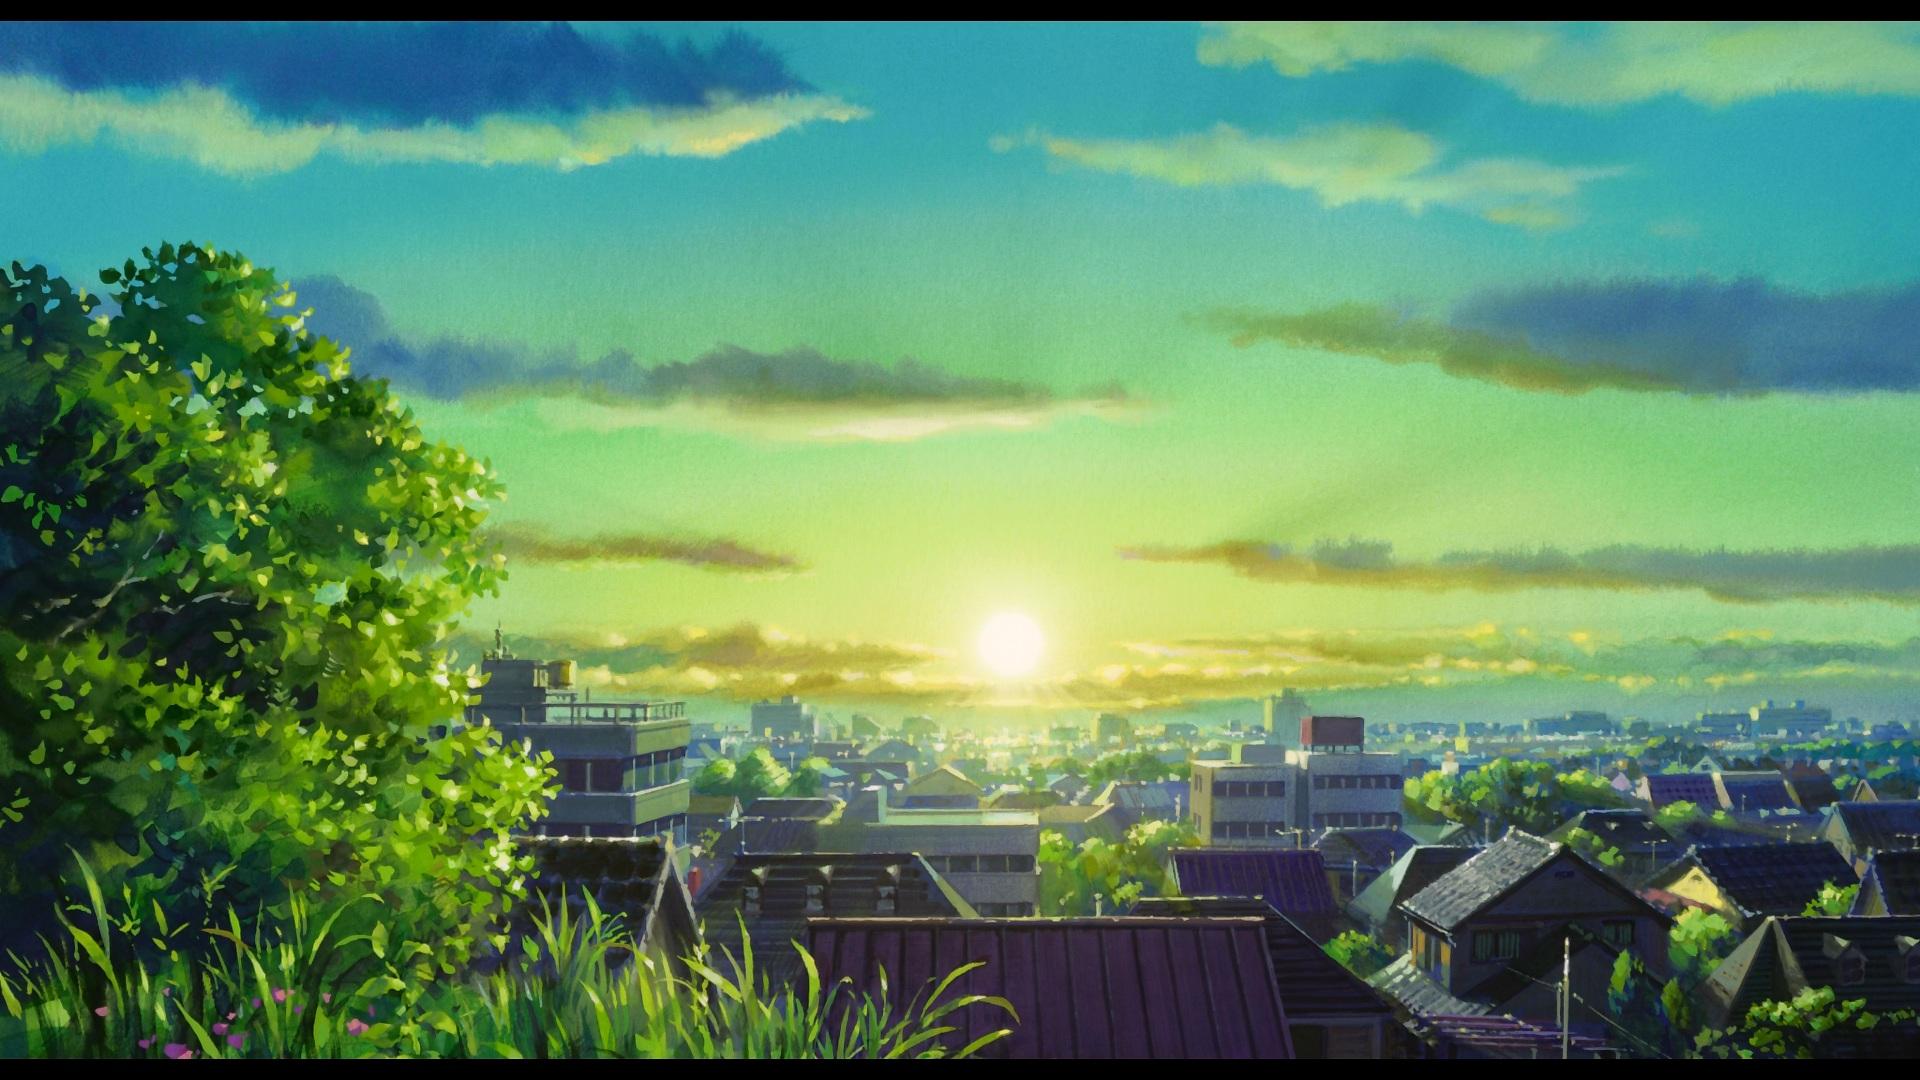 Hình nền Anime buổi sáng rực rỡ: Tận hưởng ngày mới với hình nền Anime buổi sáng hoàn hảo! Chỉ với một nhấp chuột, bạn sẽ được chuyển đến một thế giới đầy màu sắc, năng động và đầy hy vọng, nơi mà mọi thứ bắt đầu trong nguồn sáng rực rỡ của mặt trời. Hãy cùng nhau chào đón một ngày mới tràn đầy niềm vui và năng lượng, và tận hưởng một buổi sáng tuyệt vời với hình nền Anime đặc biệt này!